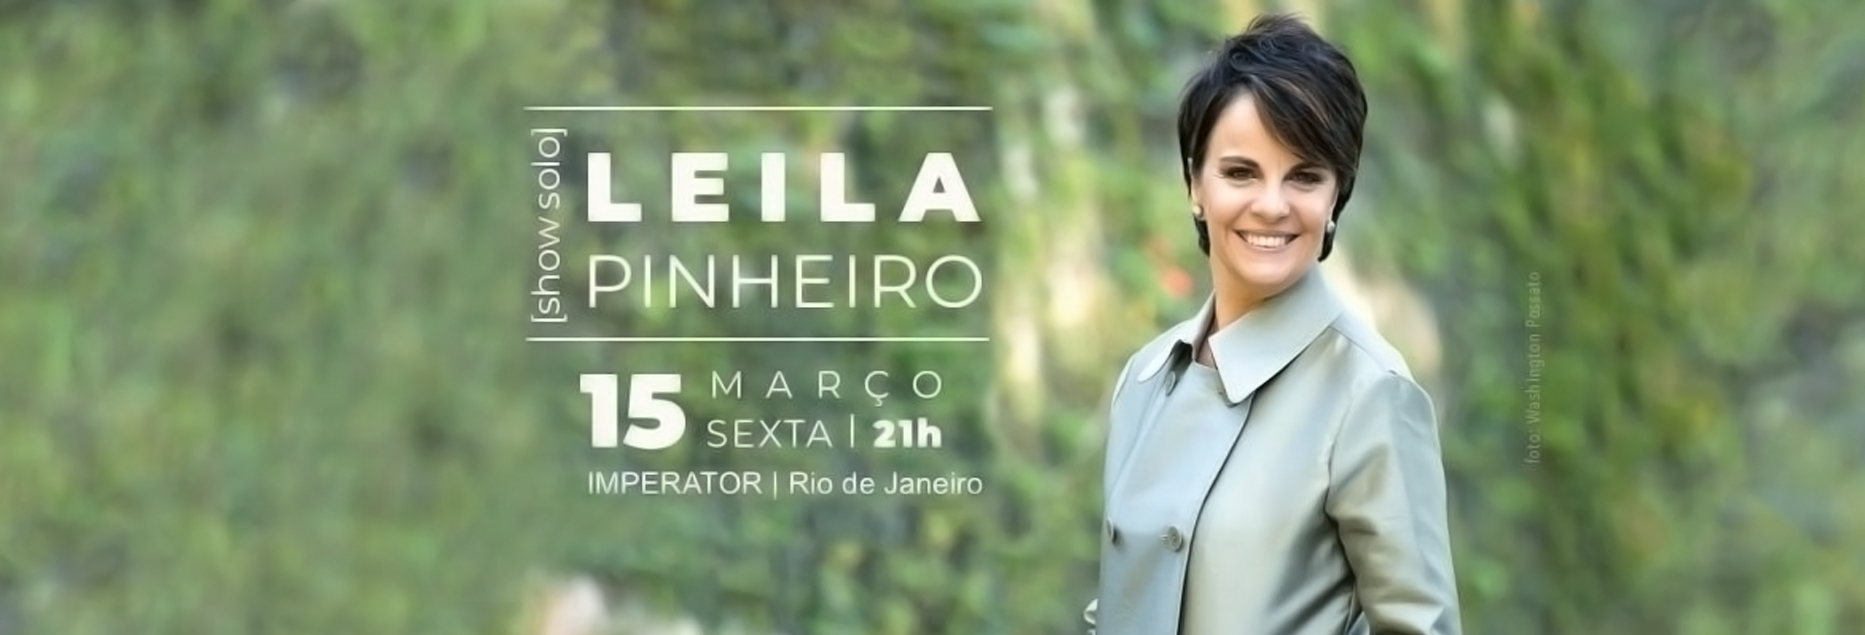 Leila Pinheiro é Atração do Imperator no Mês Dedicado à Mulher